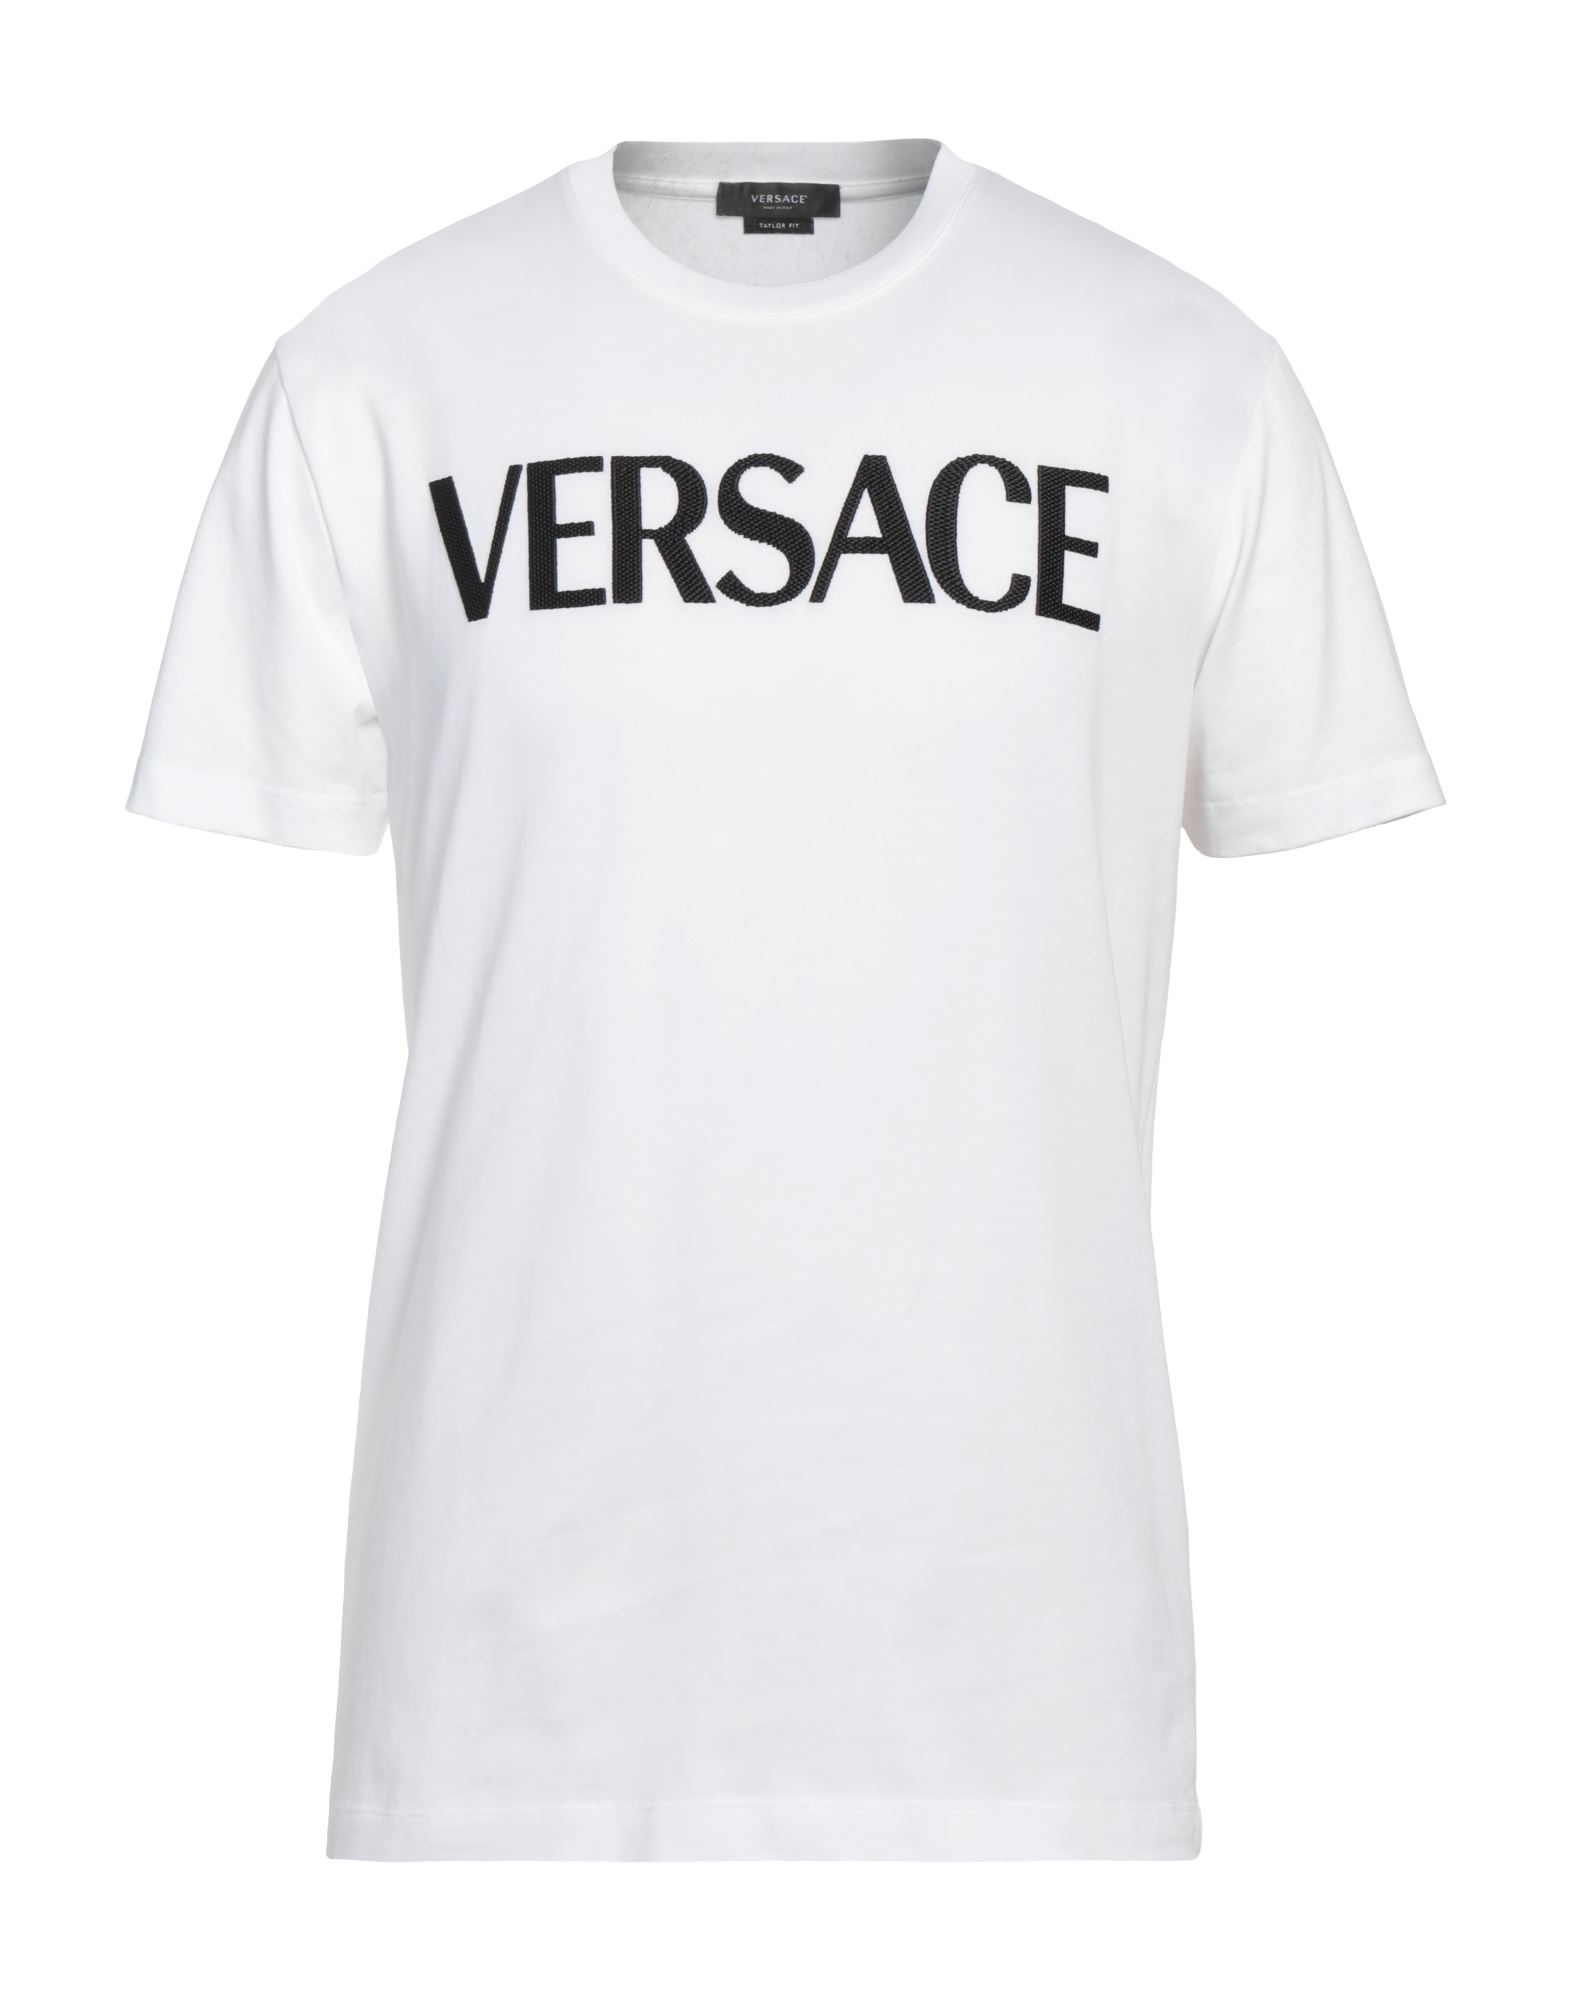 VERSACE T-shirts Herren Weiß von VERSACE